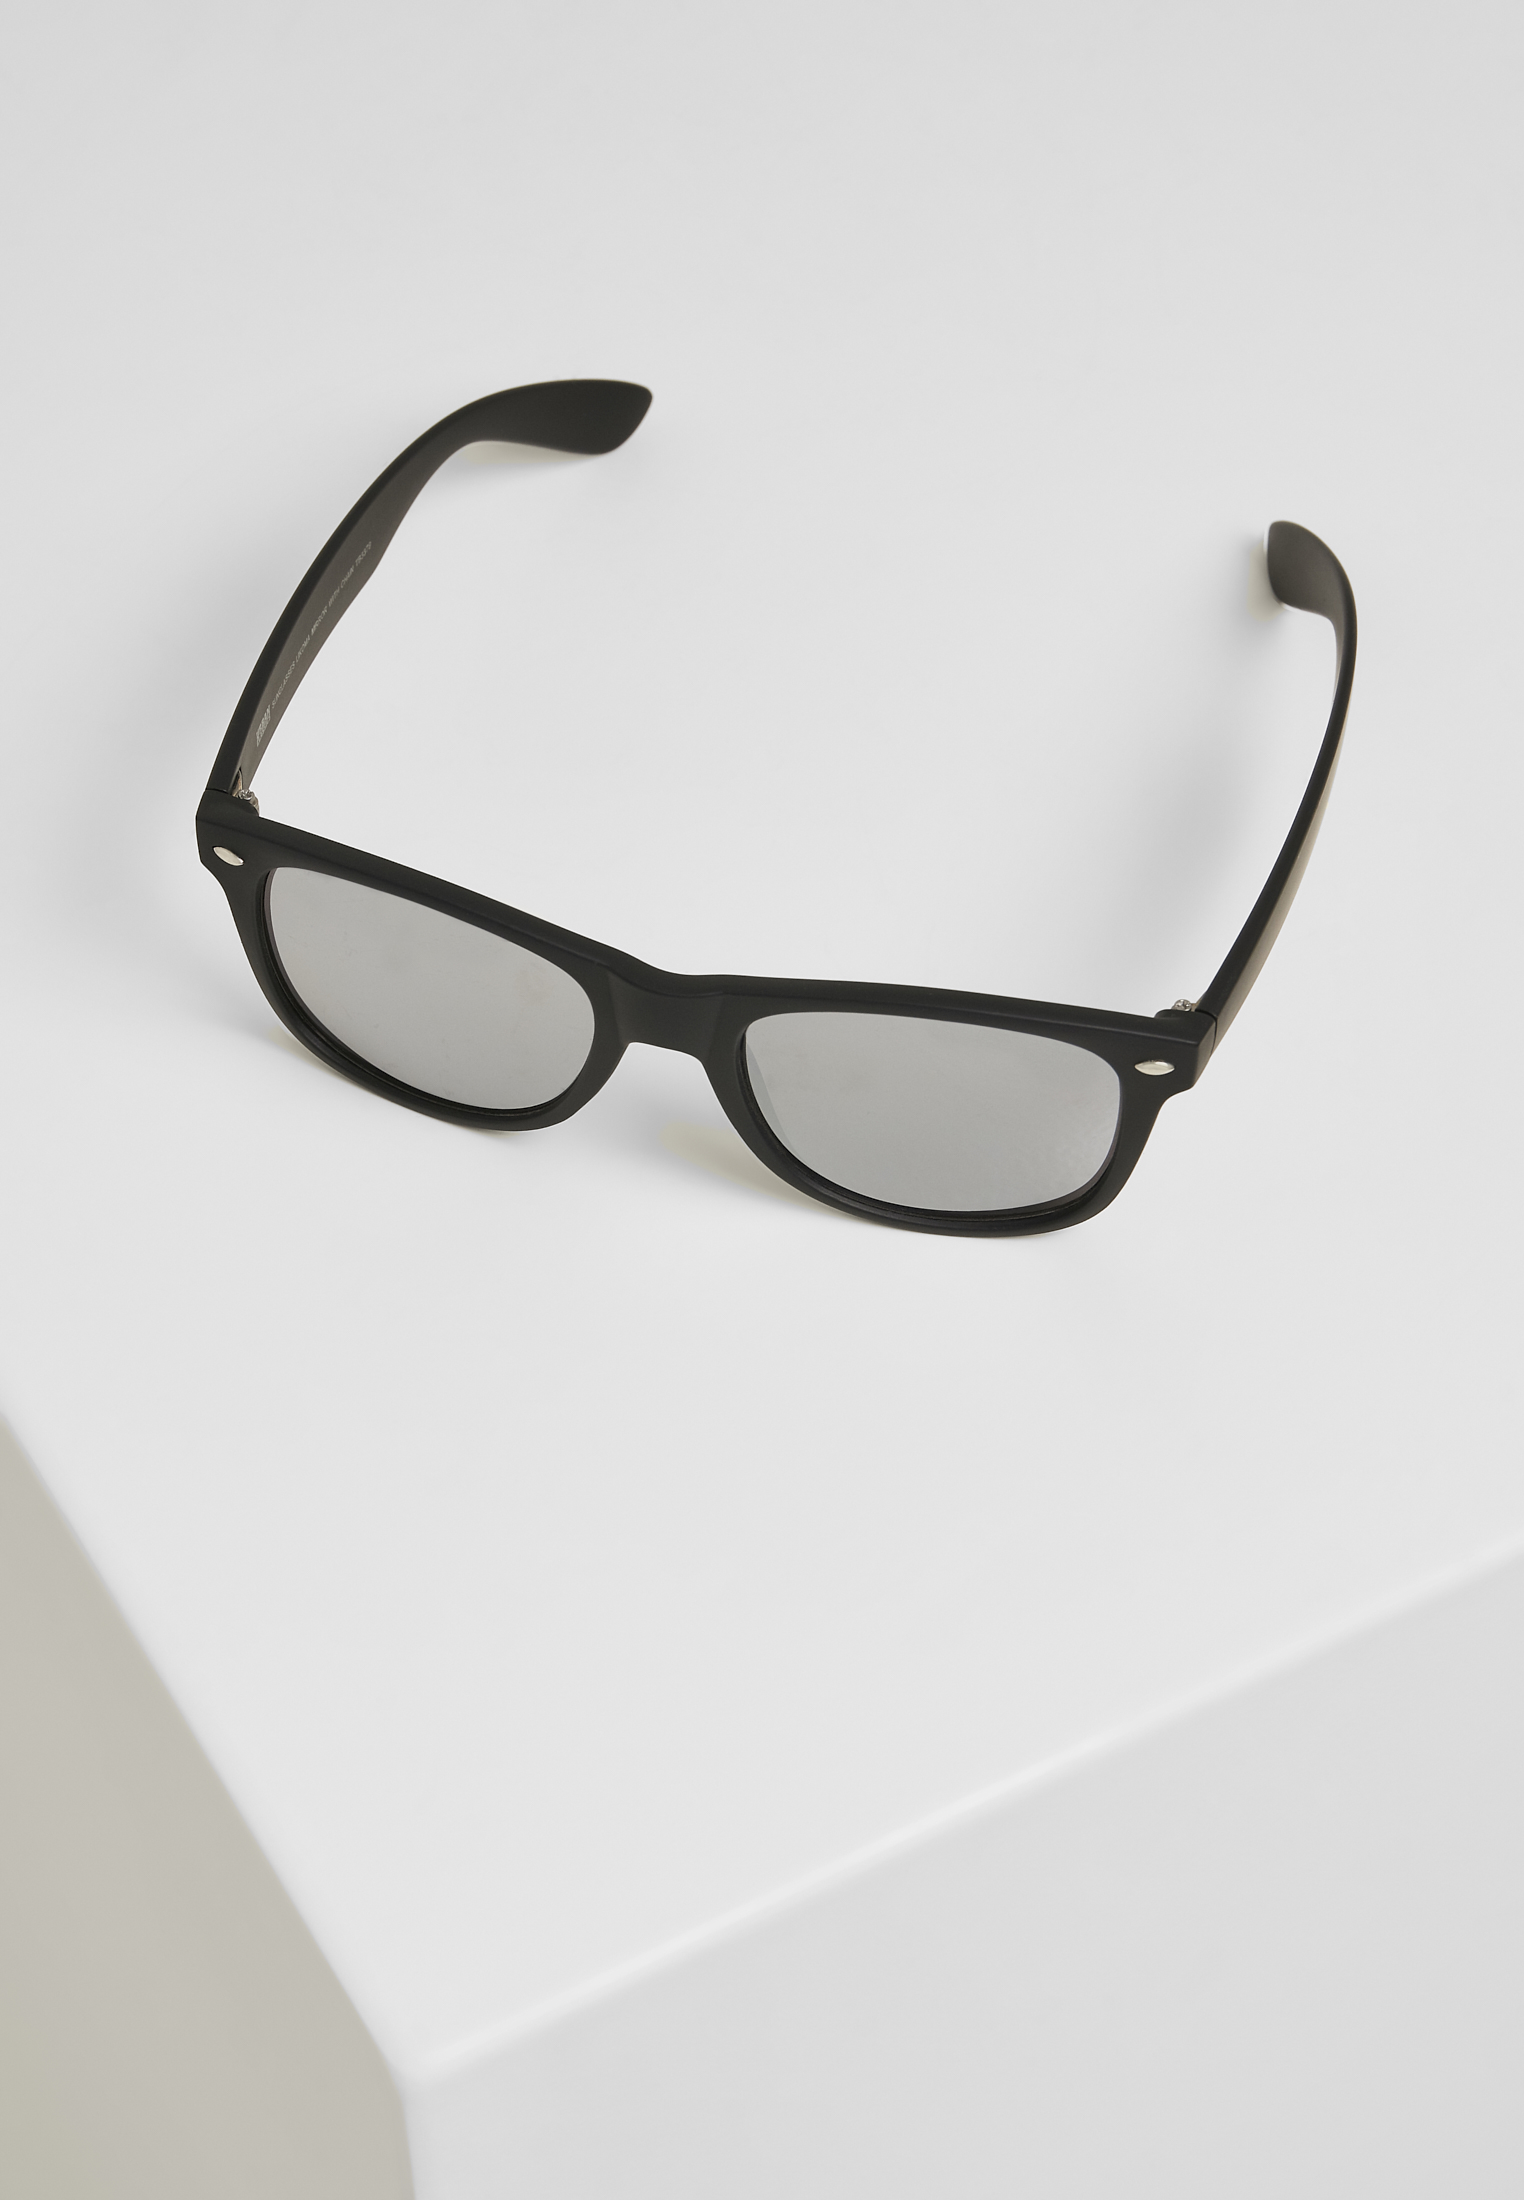 Sonnenbrillen Sunglasses Likoma Mirror With Chain in Farbe black/silver